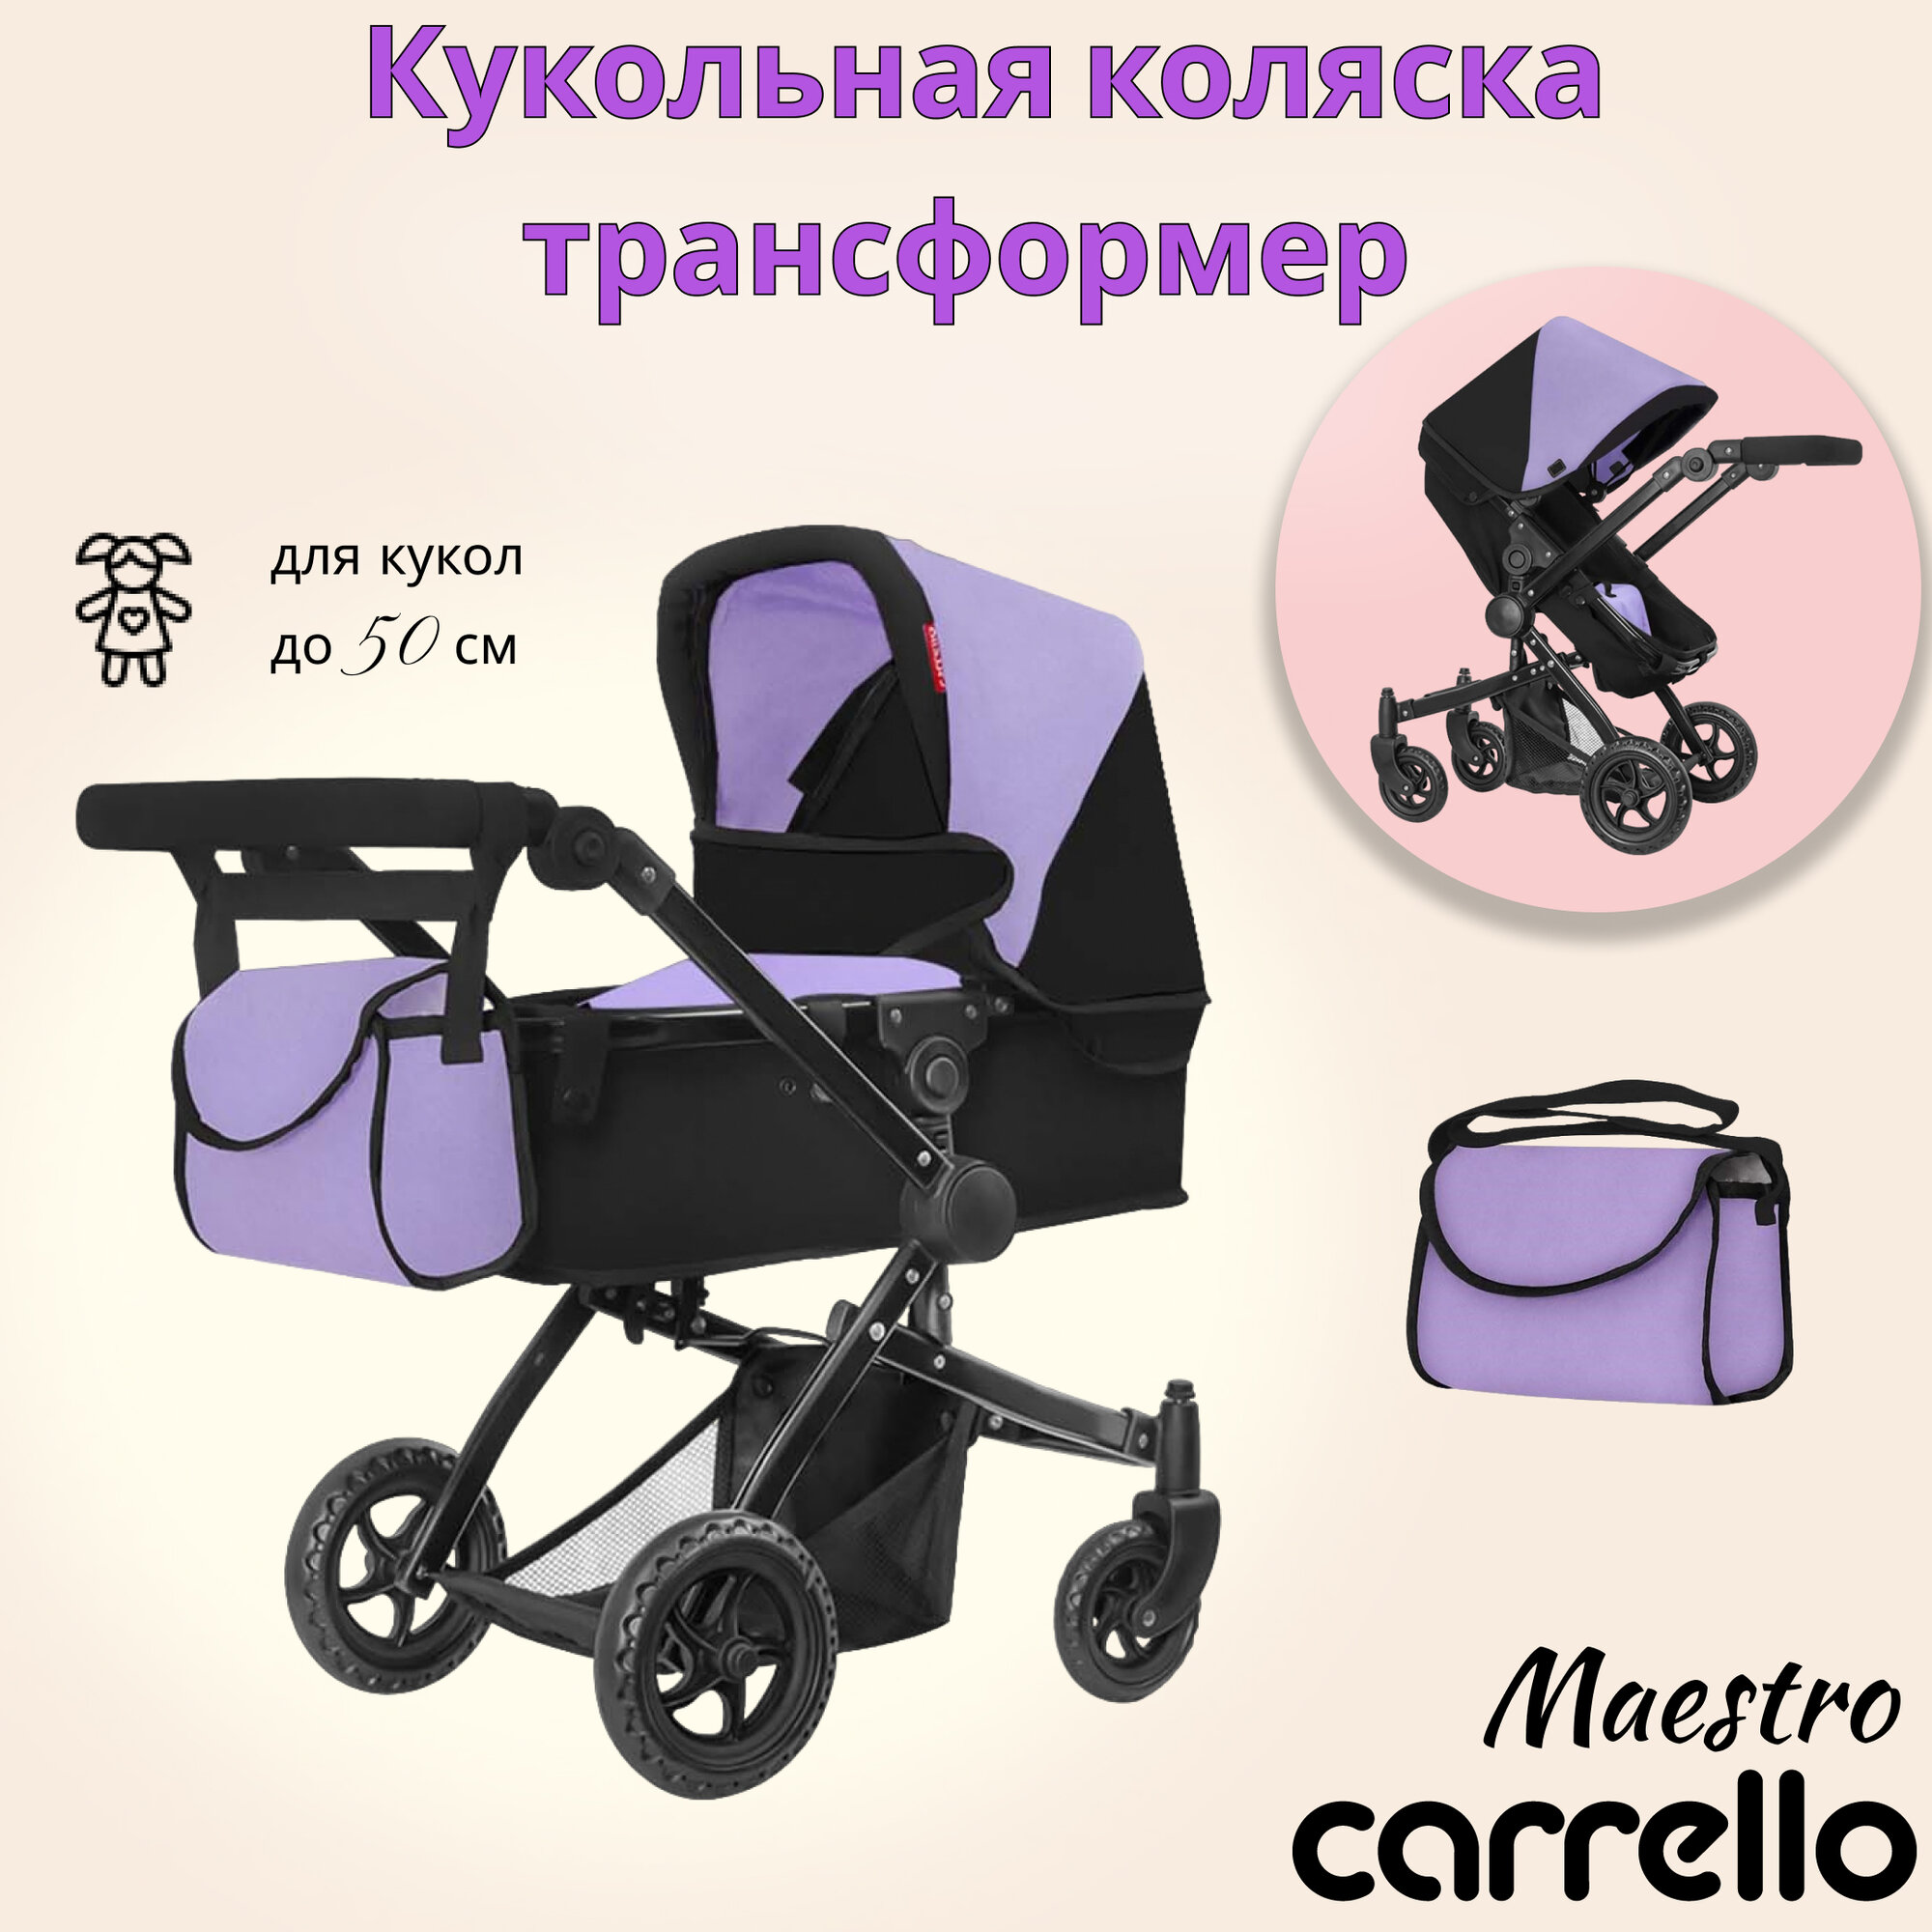 Коляски для кукол Carrello Maestro 2в1, фиолетовый